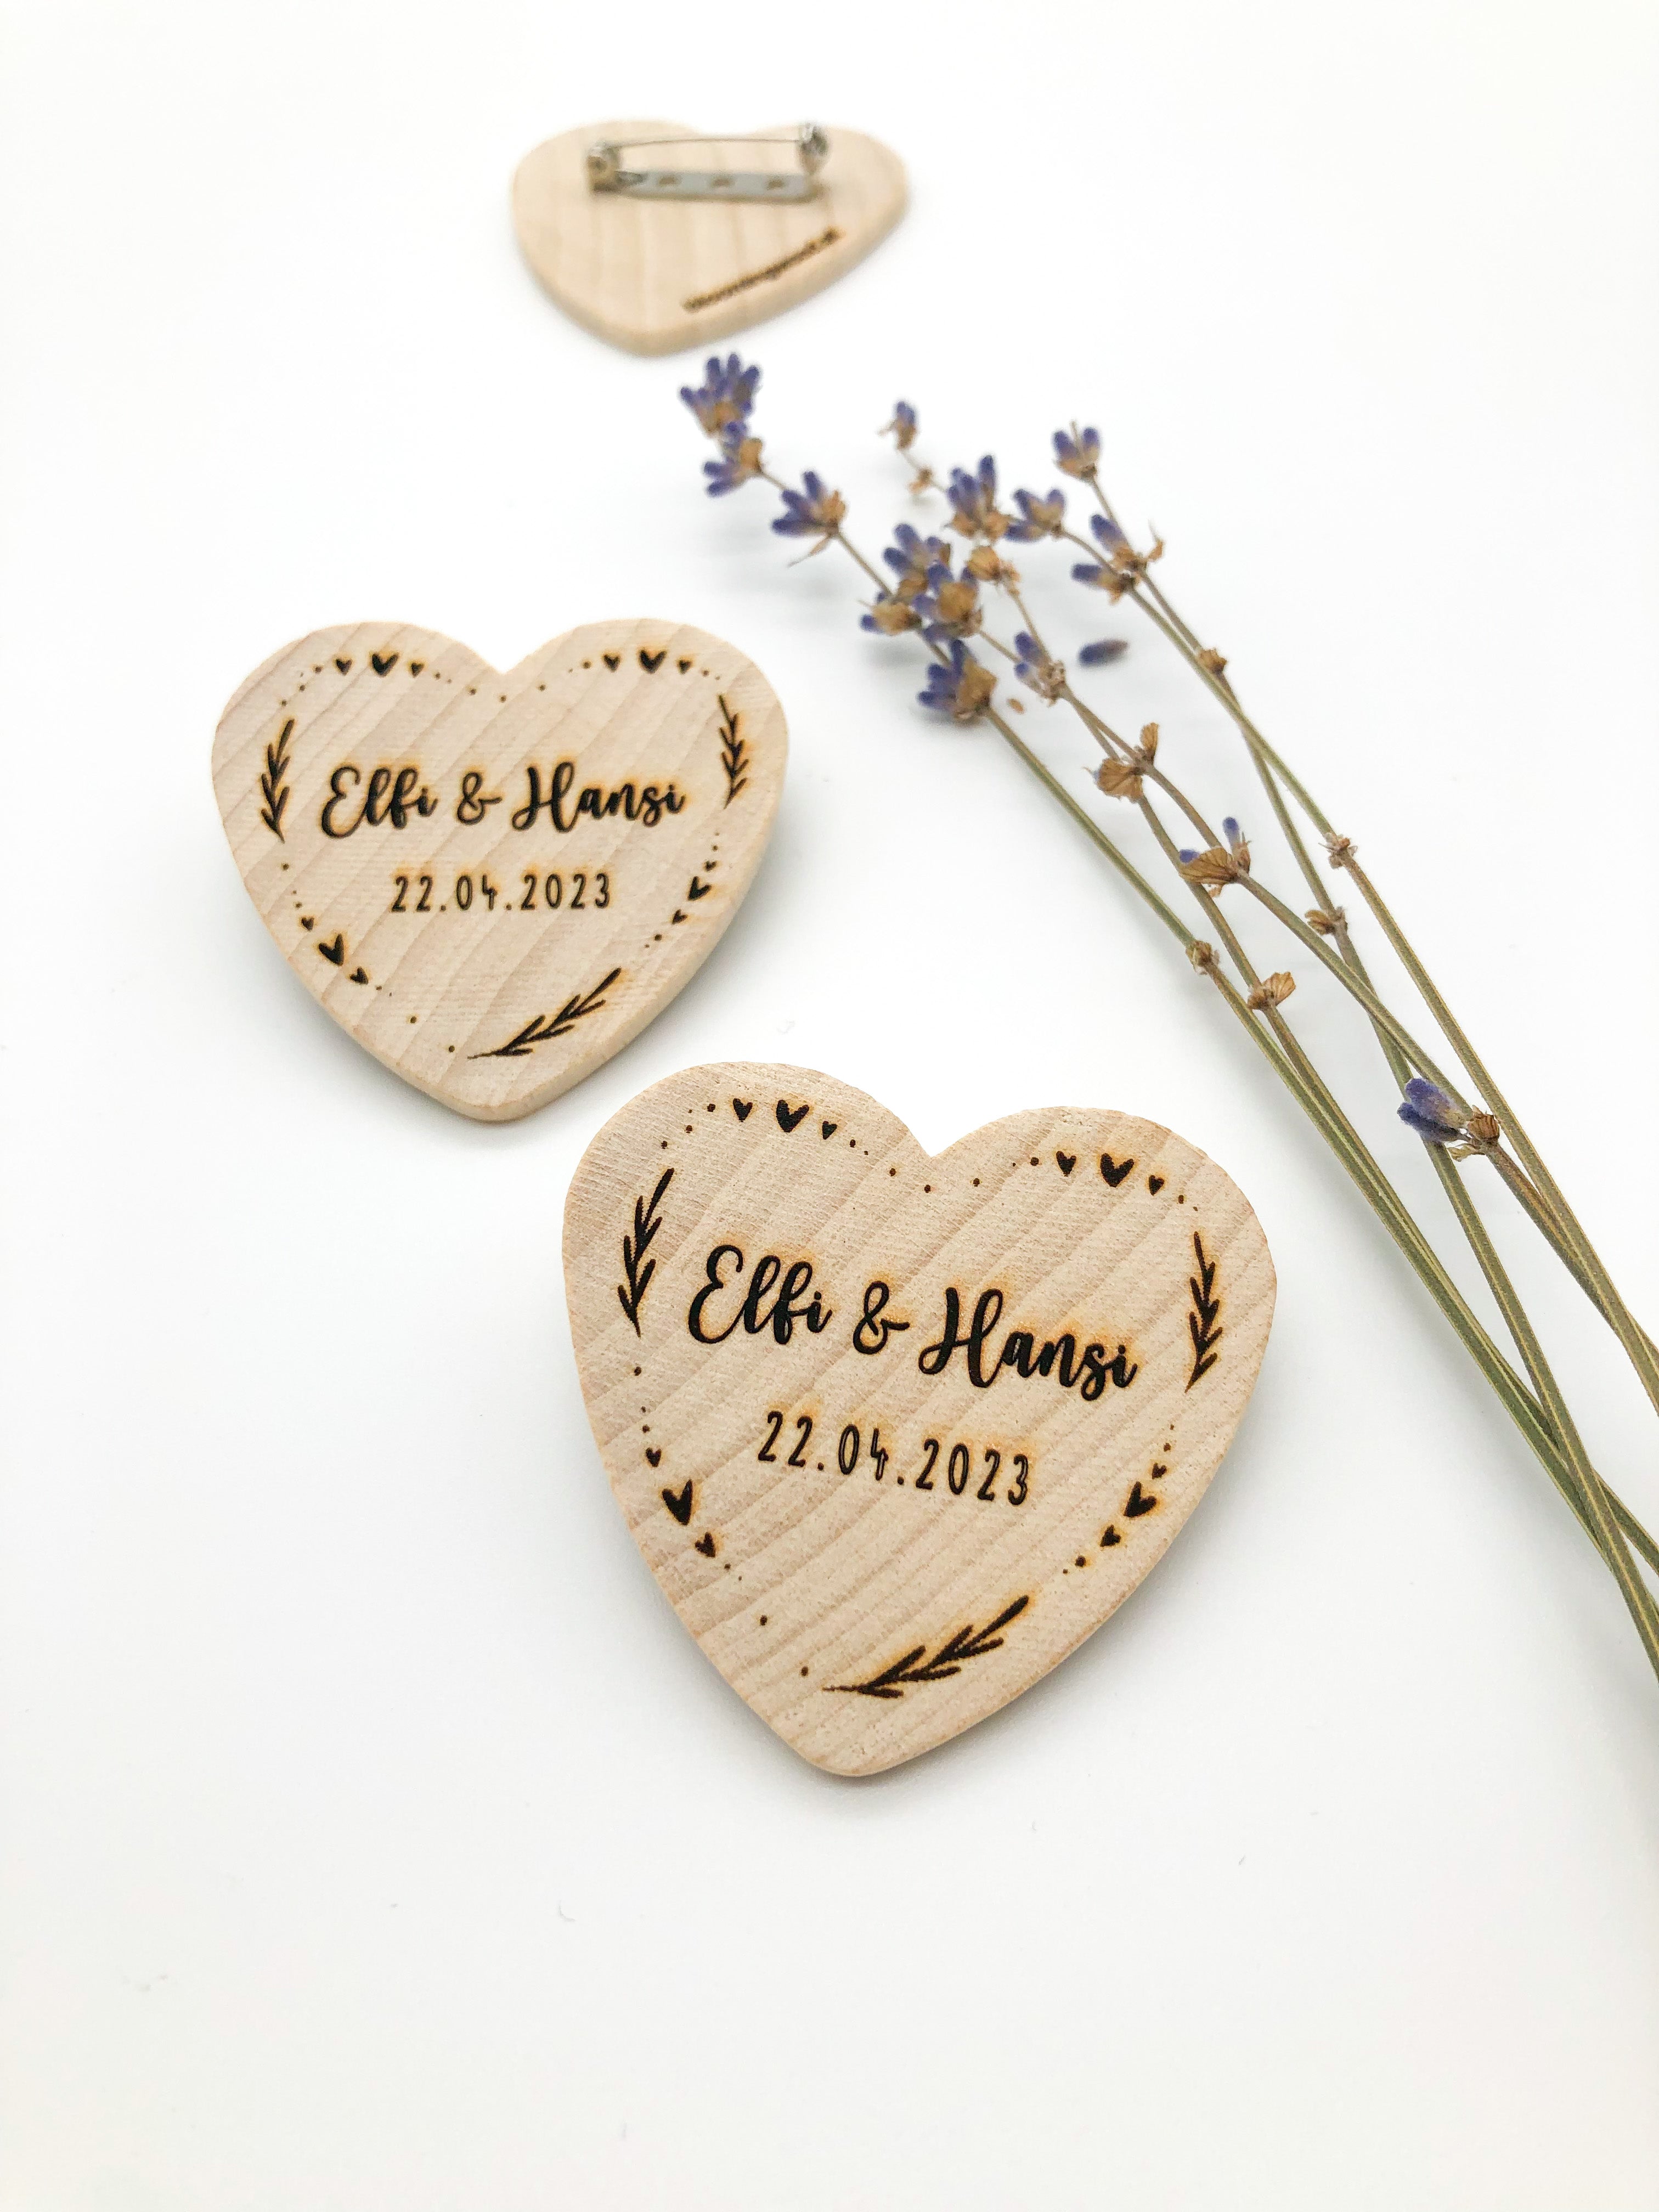 Anstecker Hochzeit für Gäste - Herz aus Holz personalisiert mit Blumenmuster für Gäste